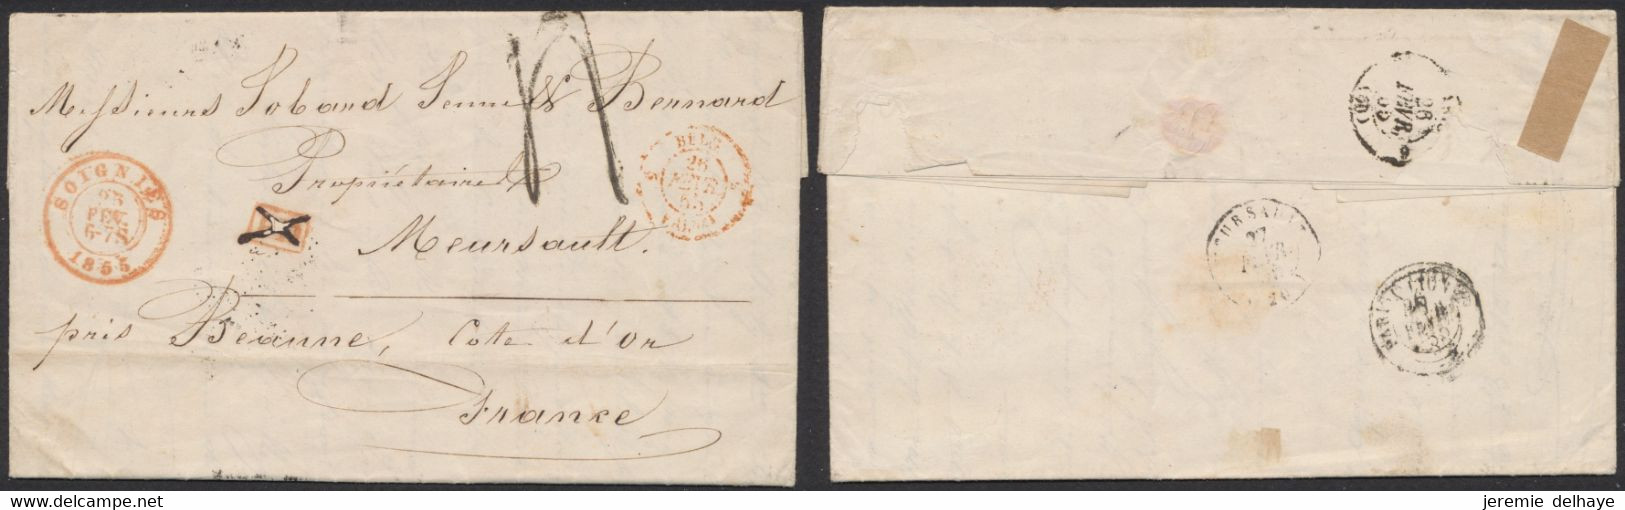 LAC Non Affranchie + Cachet Dateur "Soignies" (1855) Griffe PD Annulé à La Plume, Port 4 Décimes > Meursault (France) - Landelijks Post